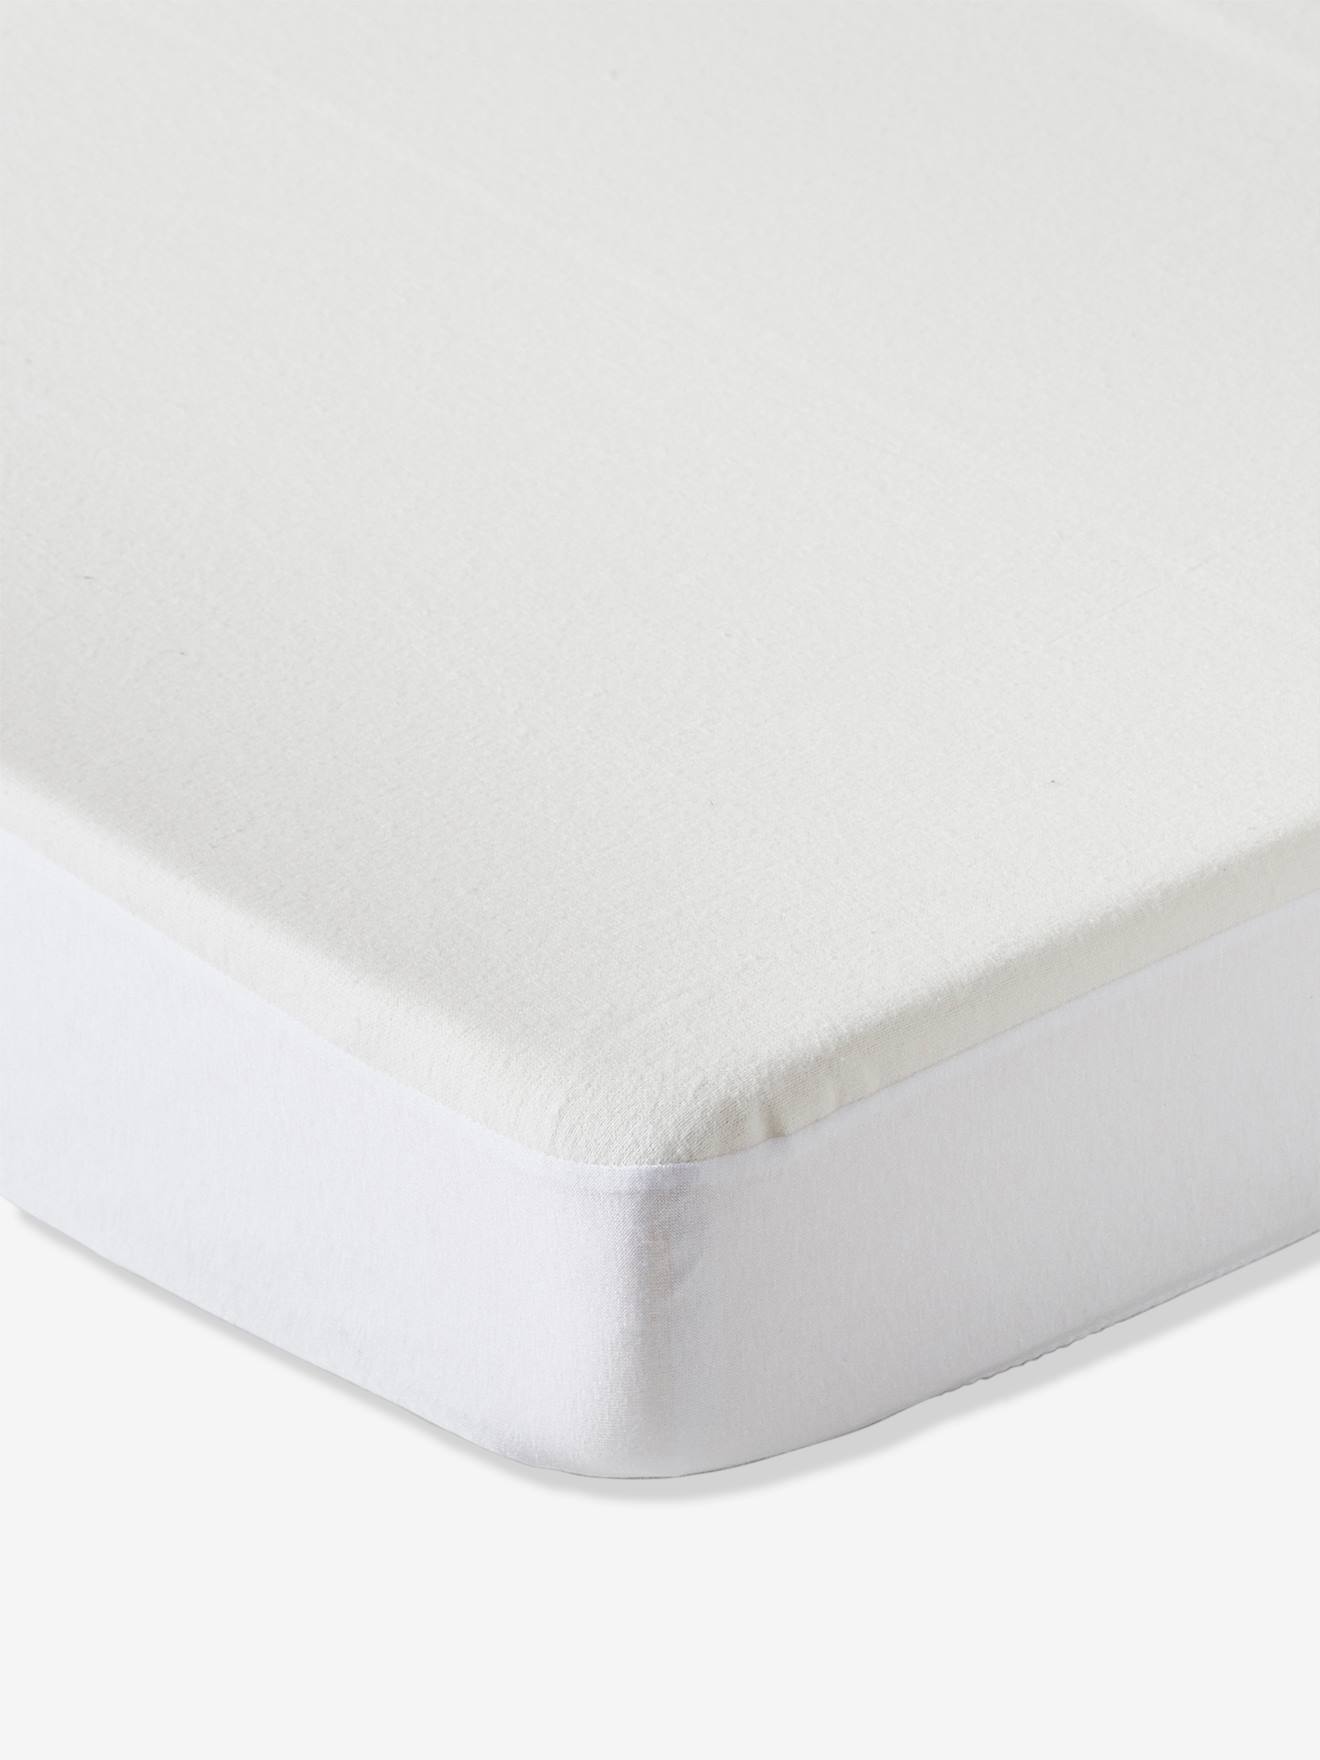 Protège matelas molleton imperméable Blanc 70 x 140 cm de P'tit